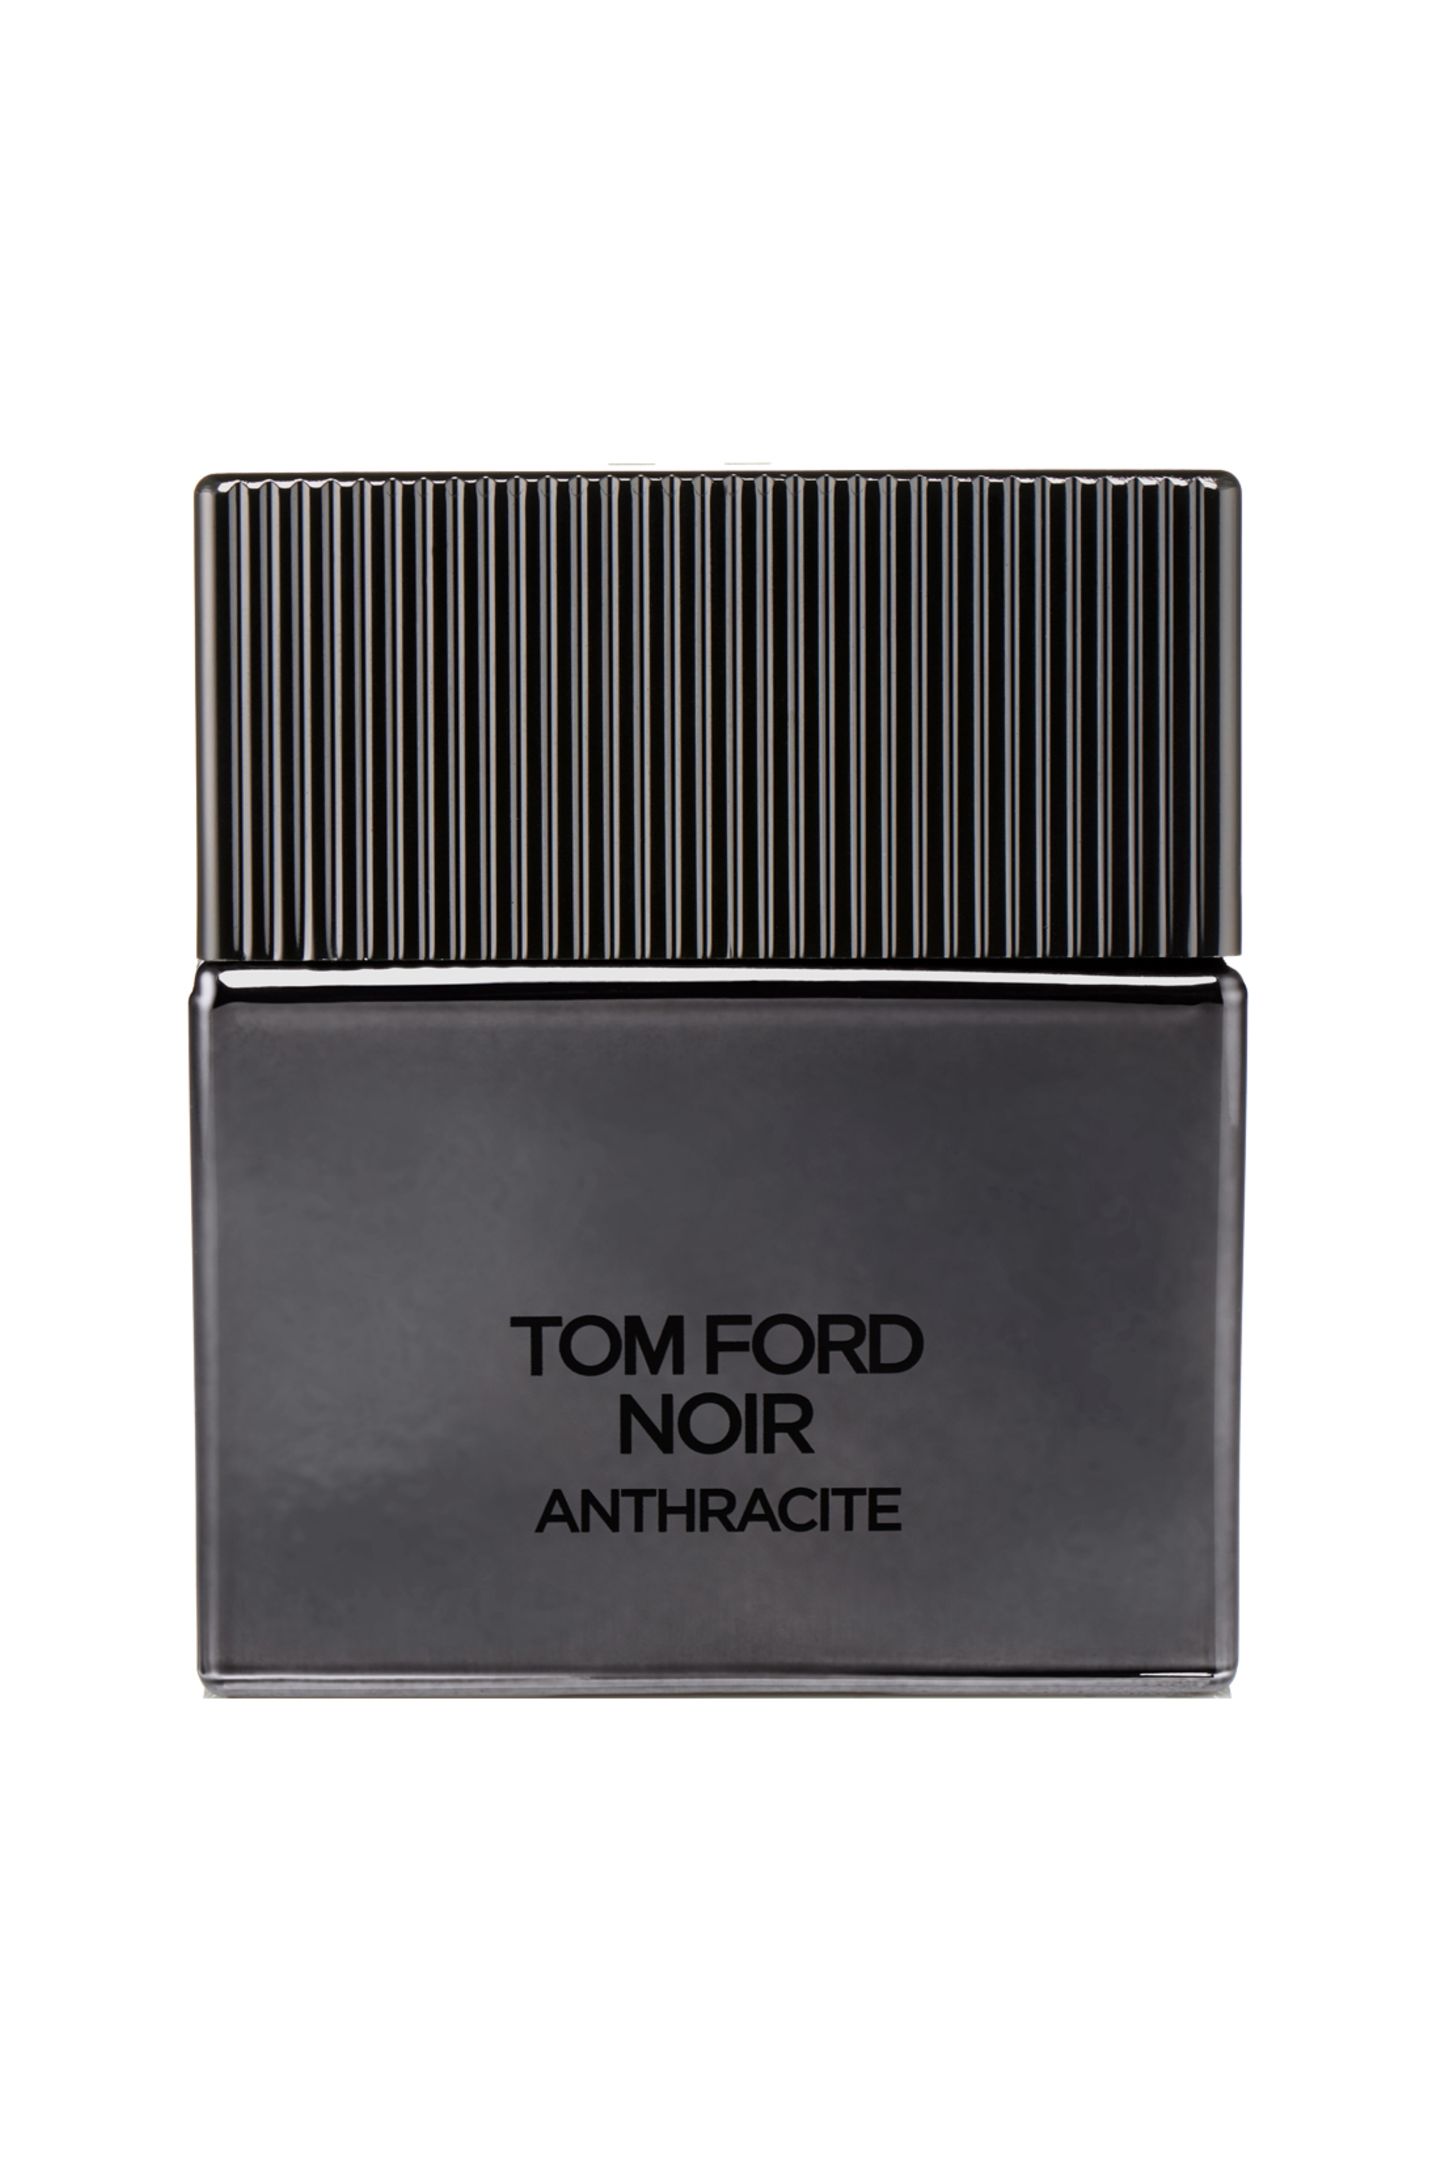 Würzig-zitrisch mit Pfeffer, Galbanumöl und Bergamotte: "Noir Anthracite" von Tom Ford, EdP, 50 ml, ca. 102 Euro